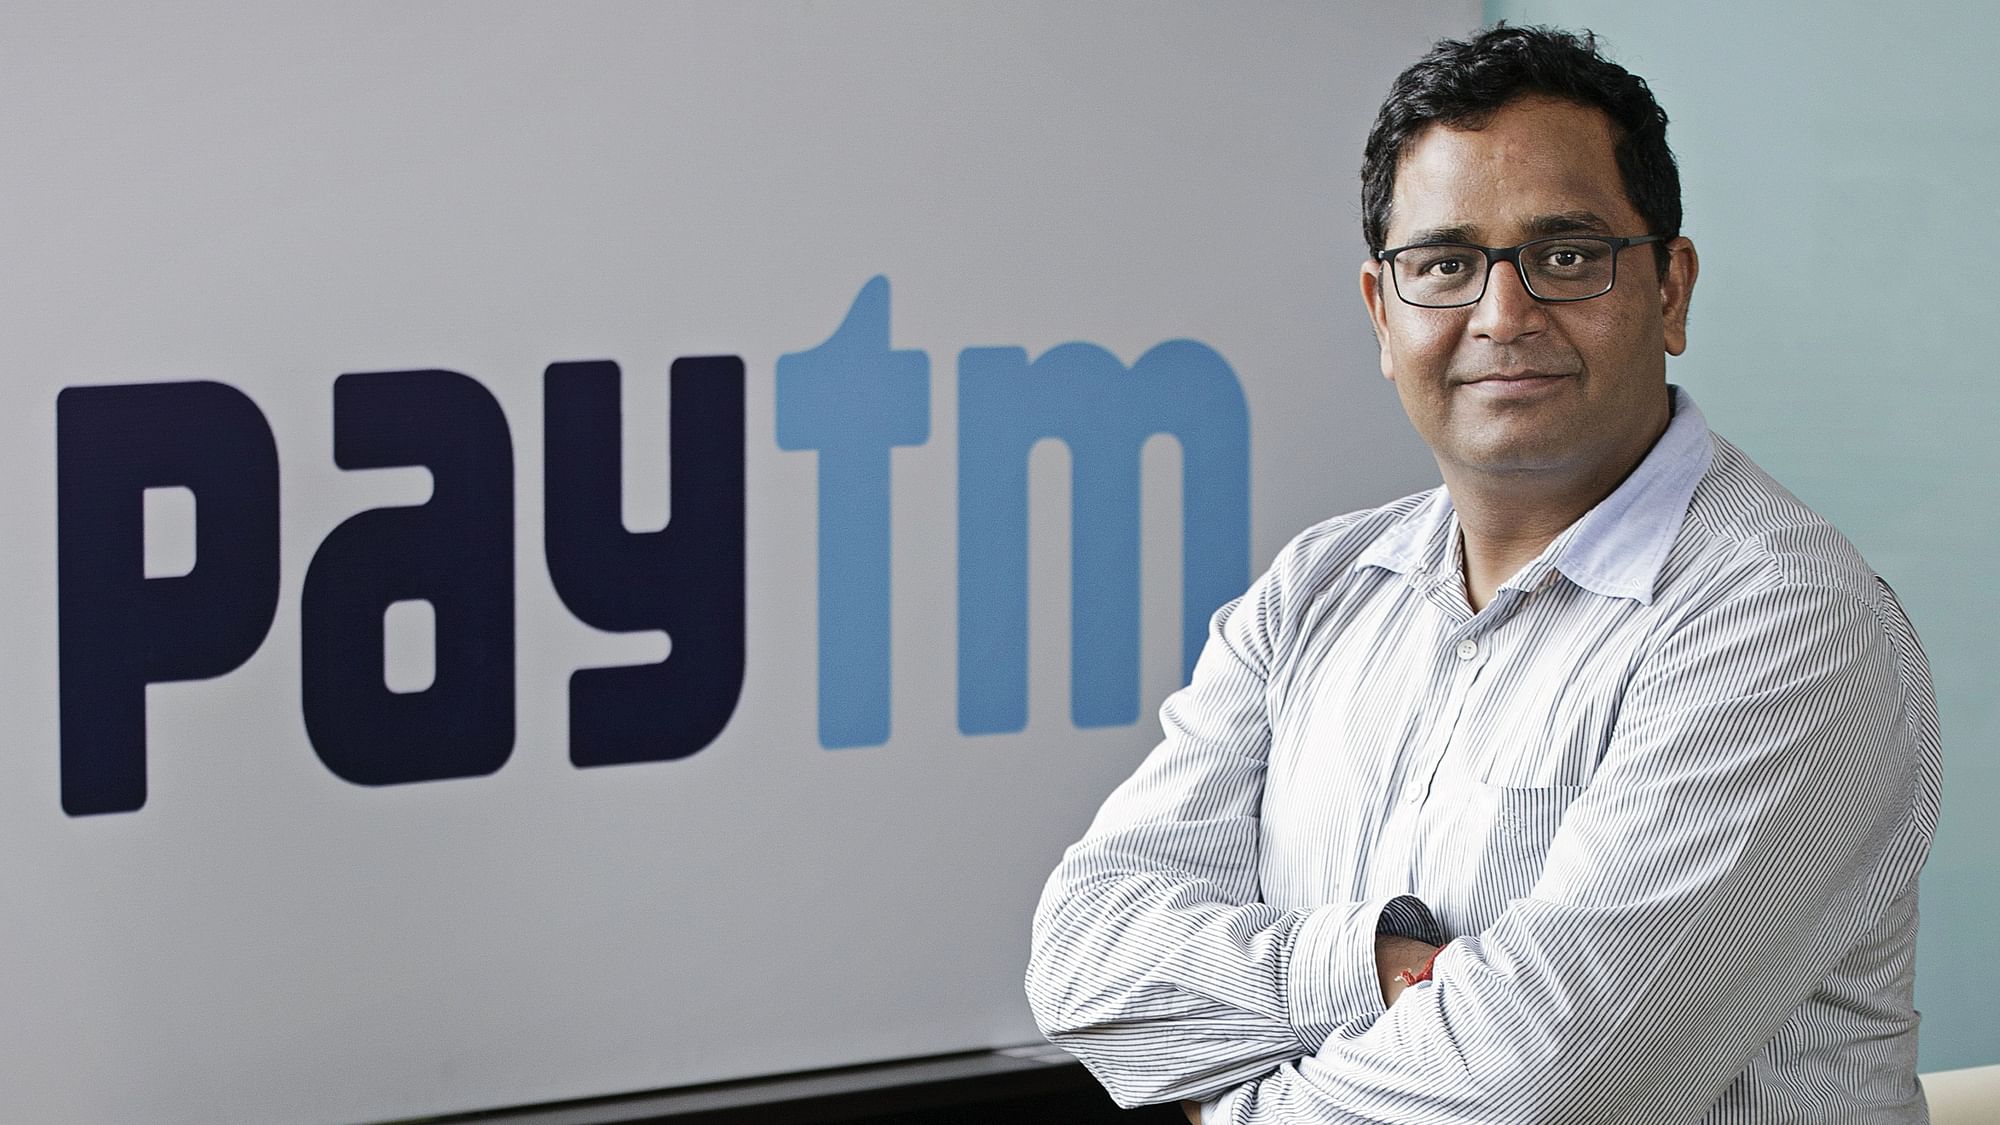 <div class="paragraphs"><p>Paytm CEO विजय शेखर शर्मा ने पेटीएम पेमेंट्स बैंक के बोर्ड से इस्तीफा दिया</p></div>